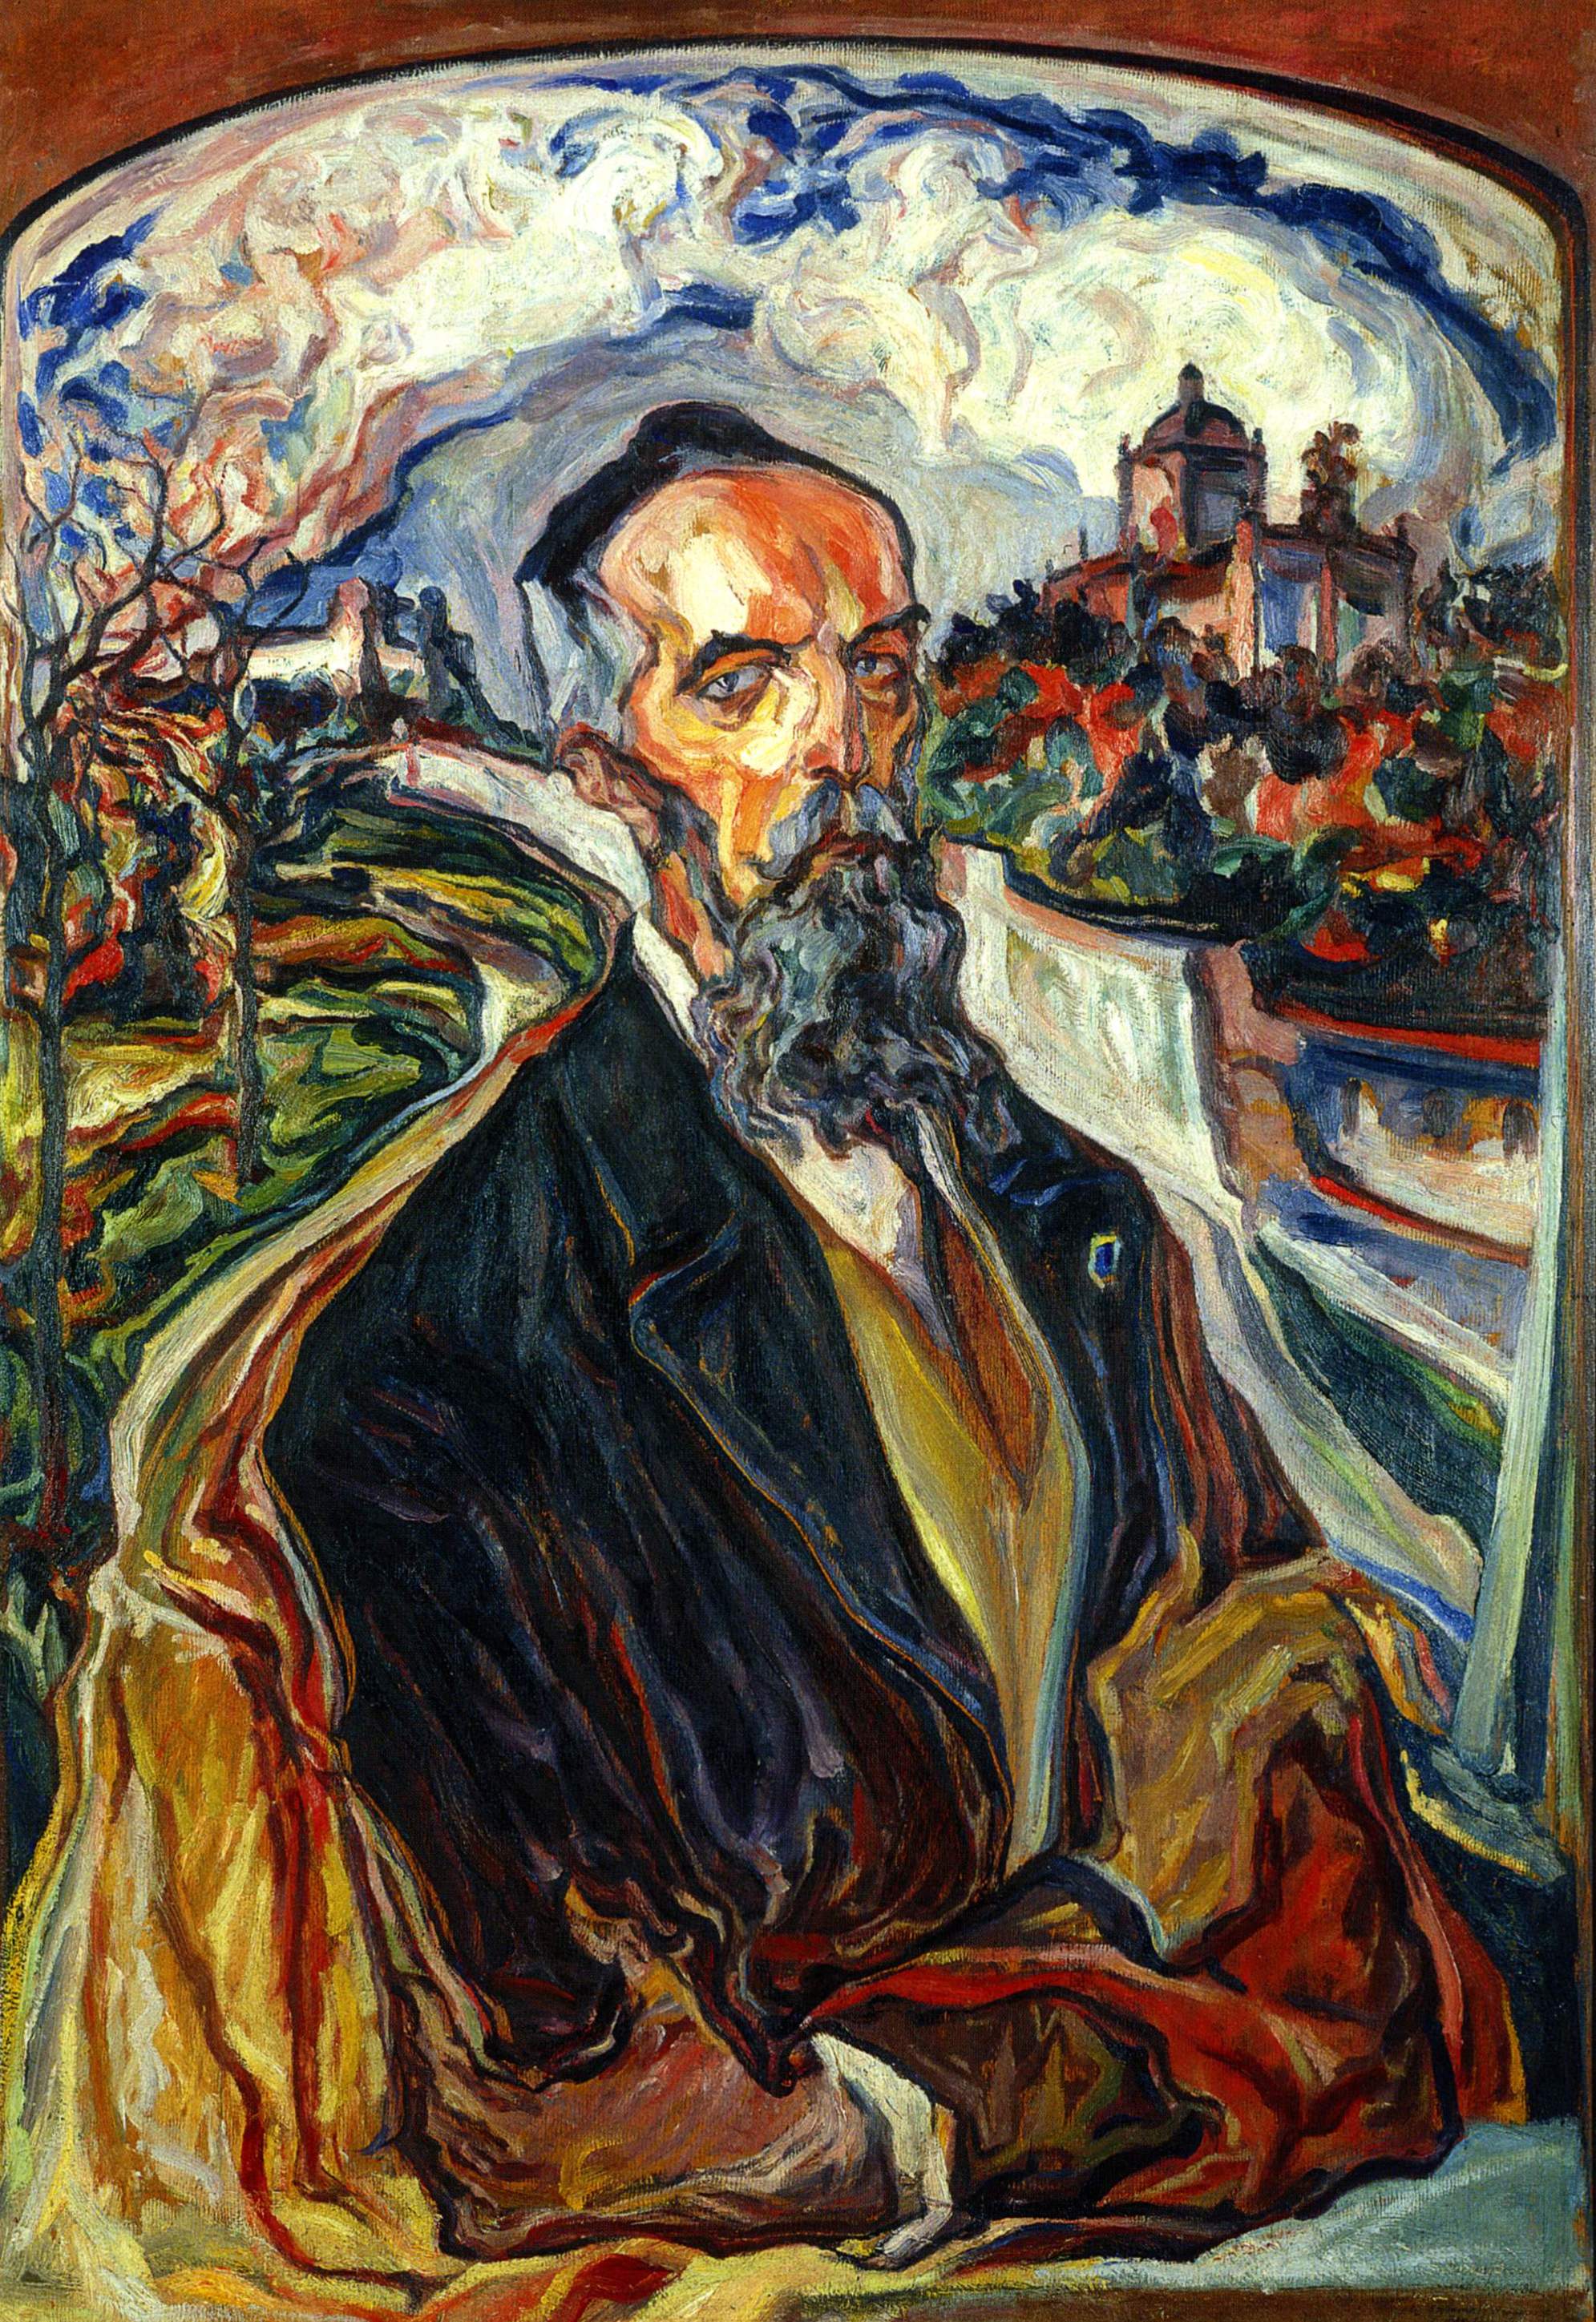 Новаковский. Портрет сенатора Олексы Барвинского (Перед бурей). 1932